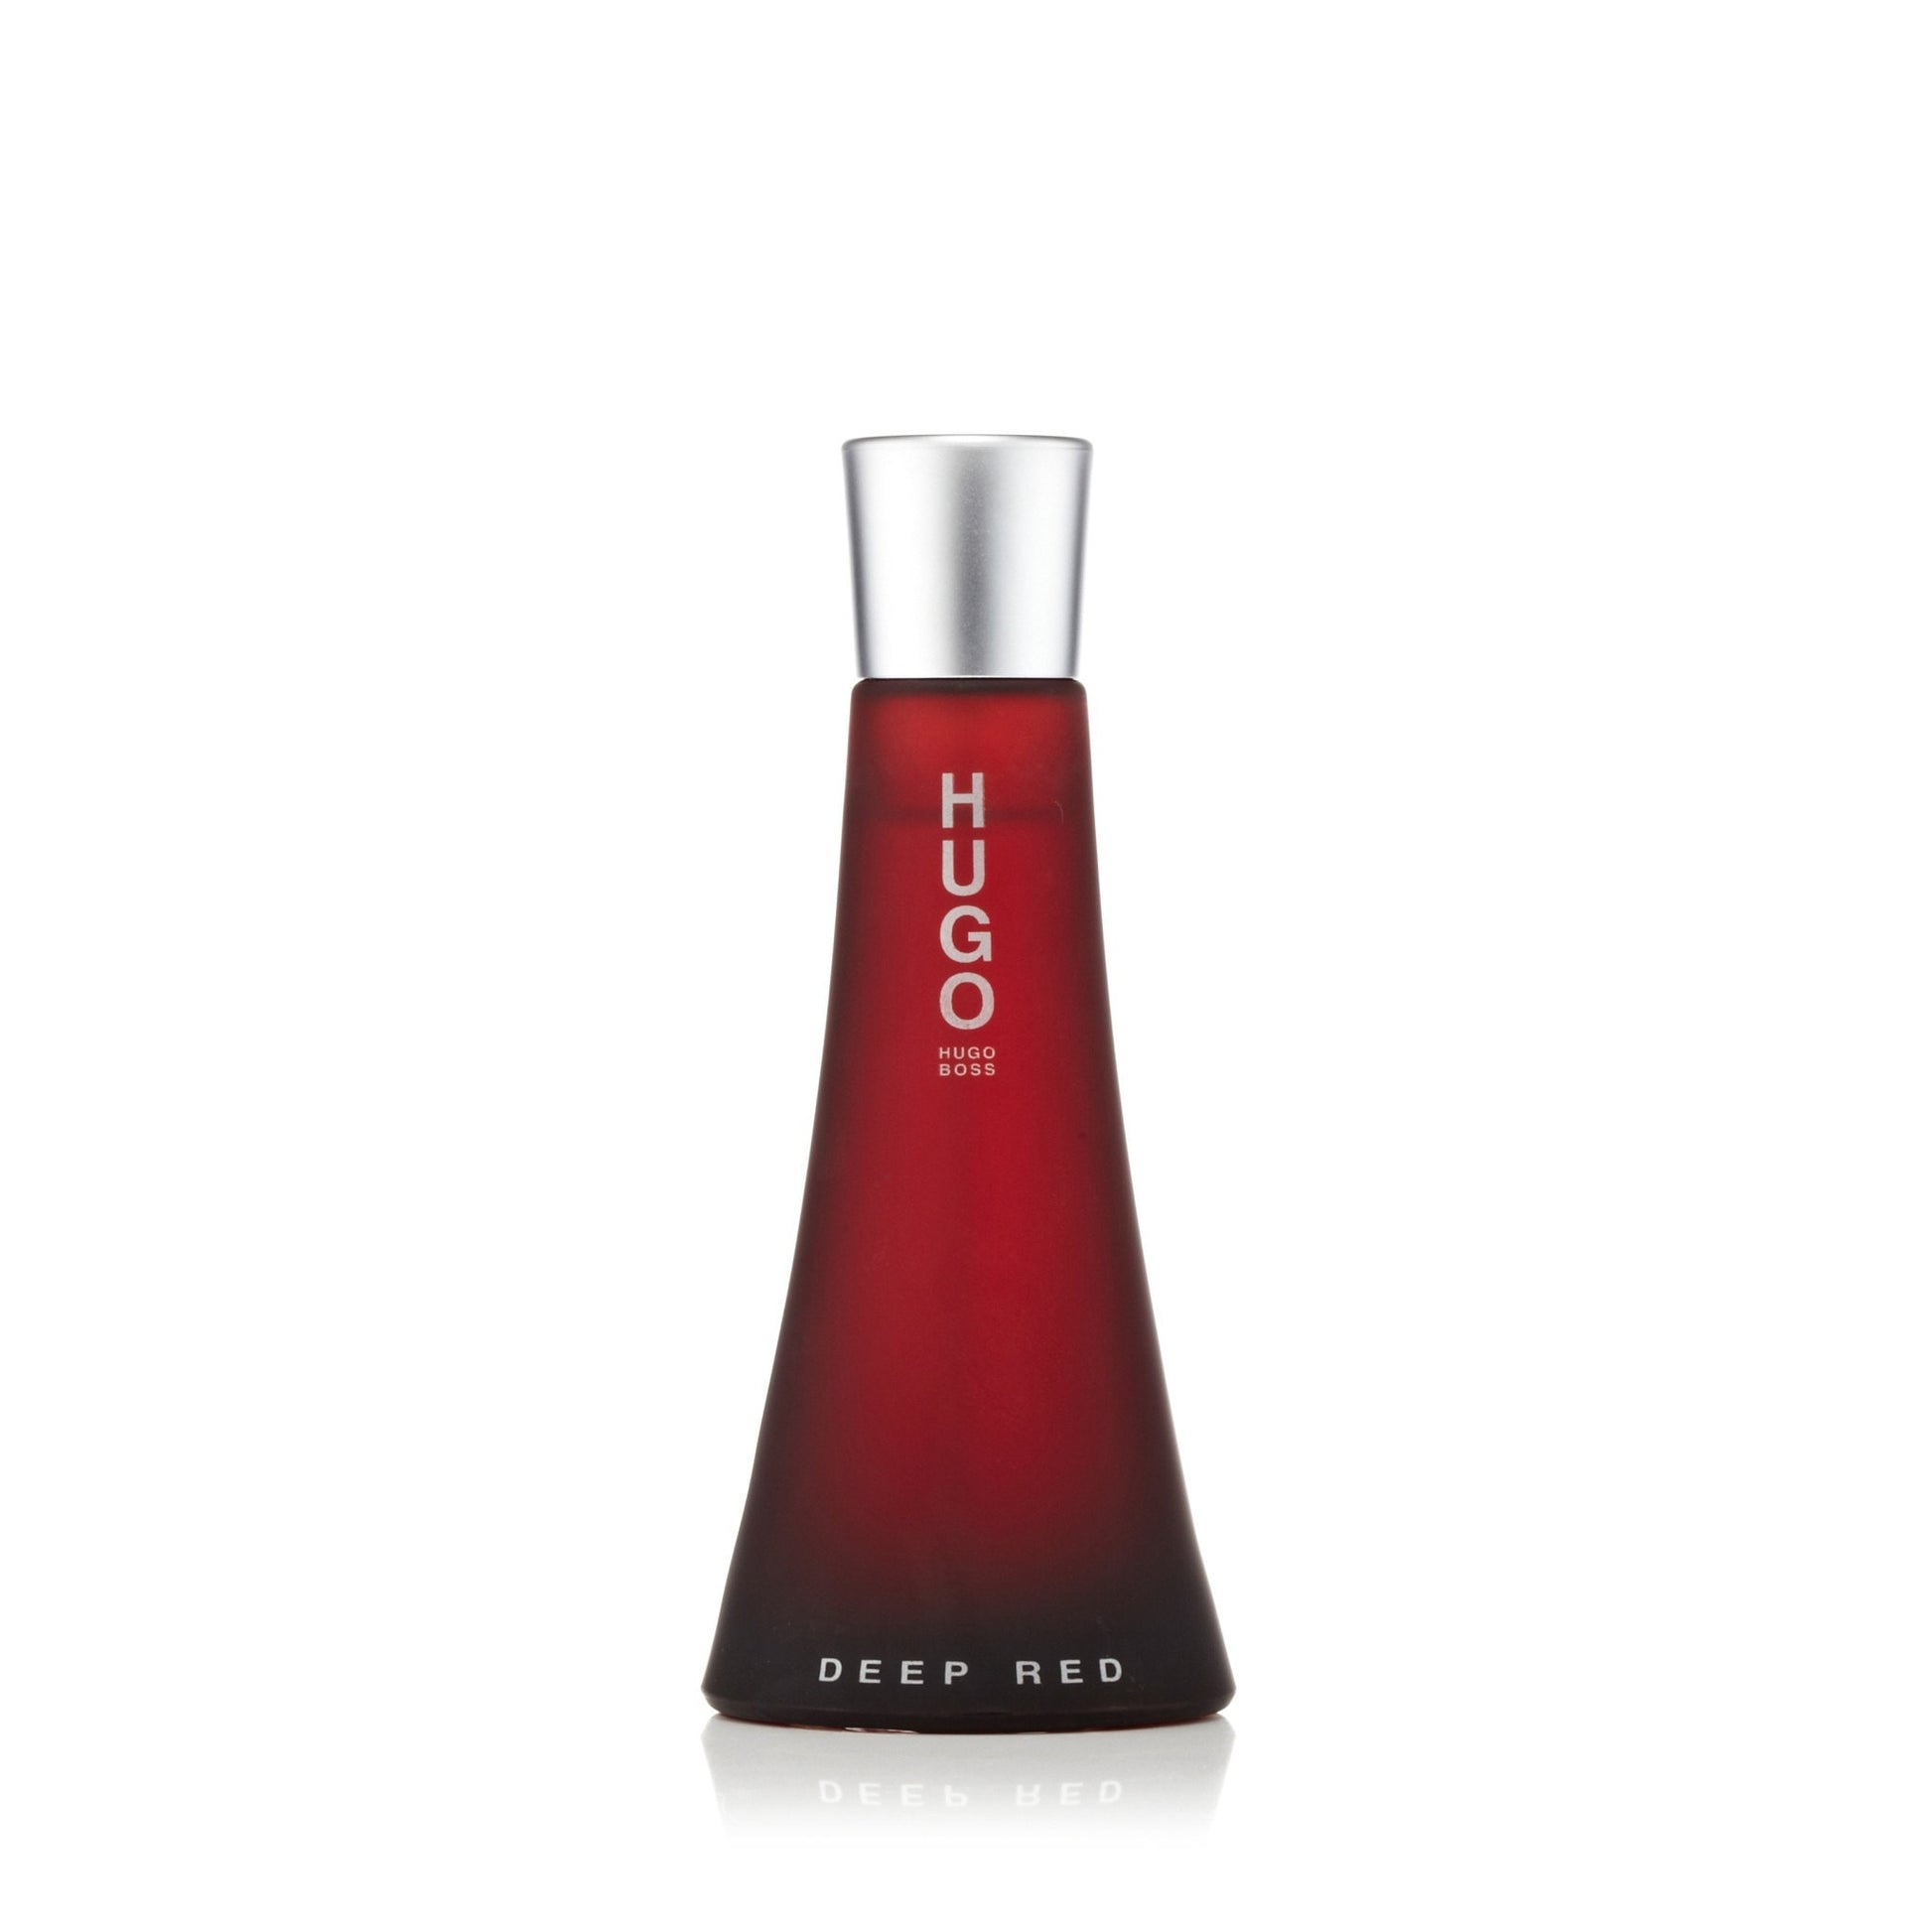 Hugo Deep Red Eau de Parfum Spray for Women by Hugo Boss 3.0 oz. Click to open in modal